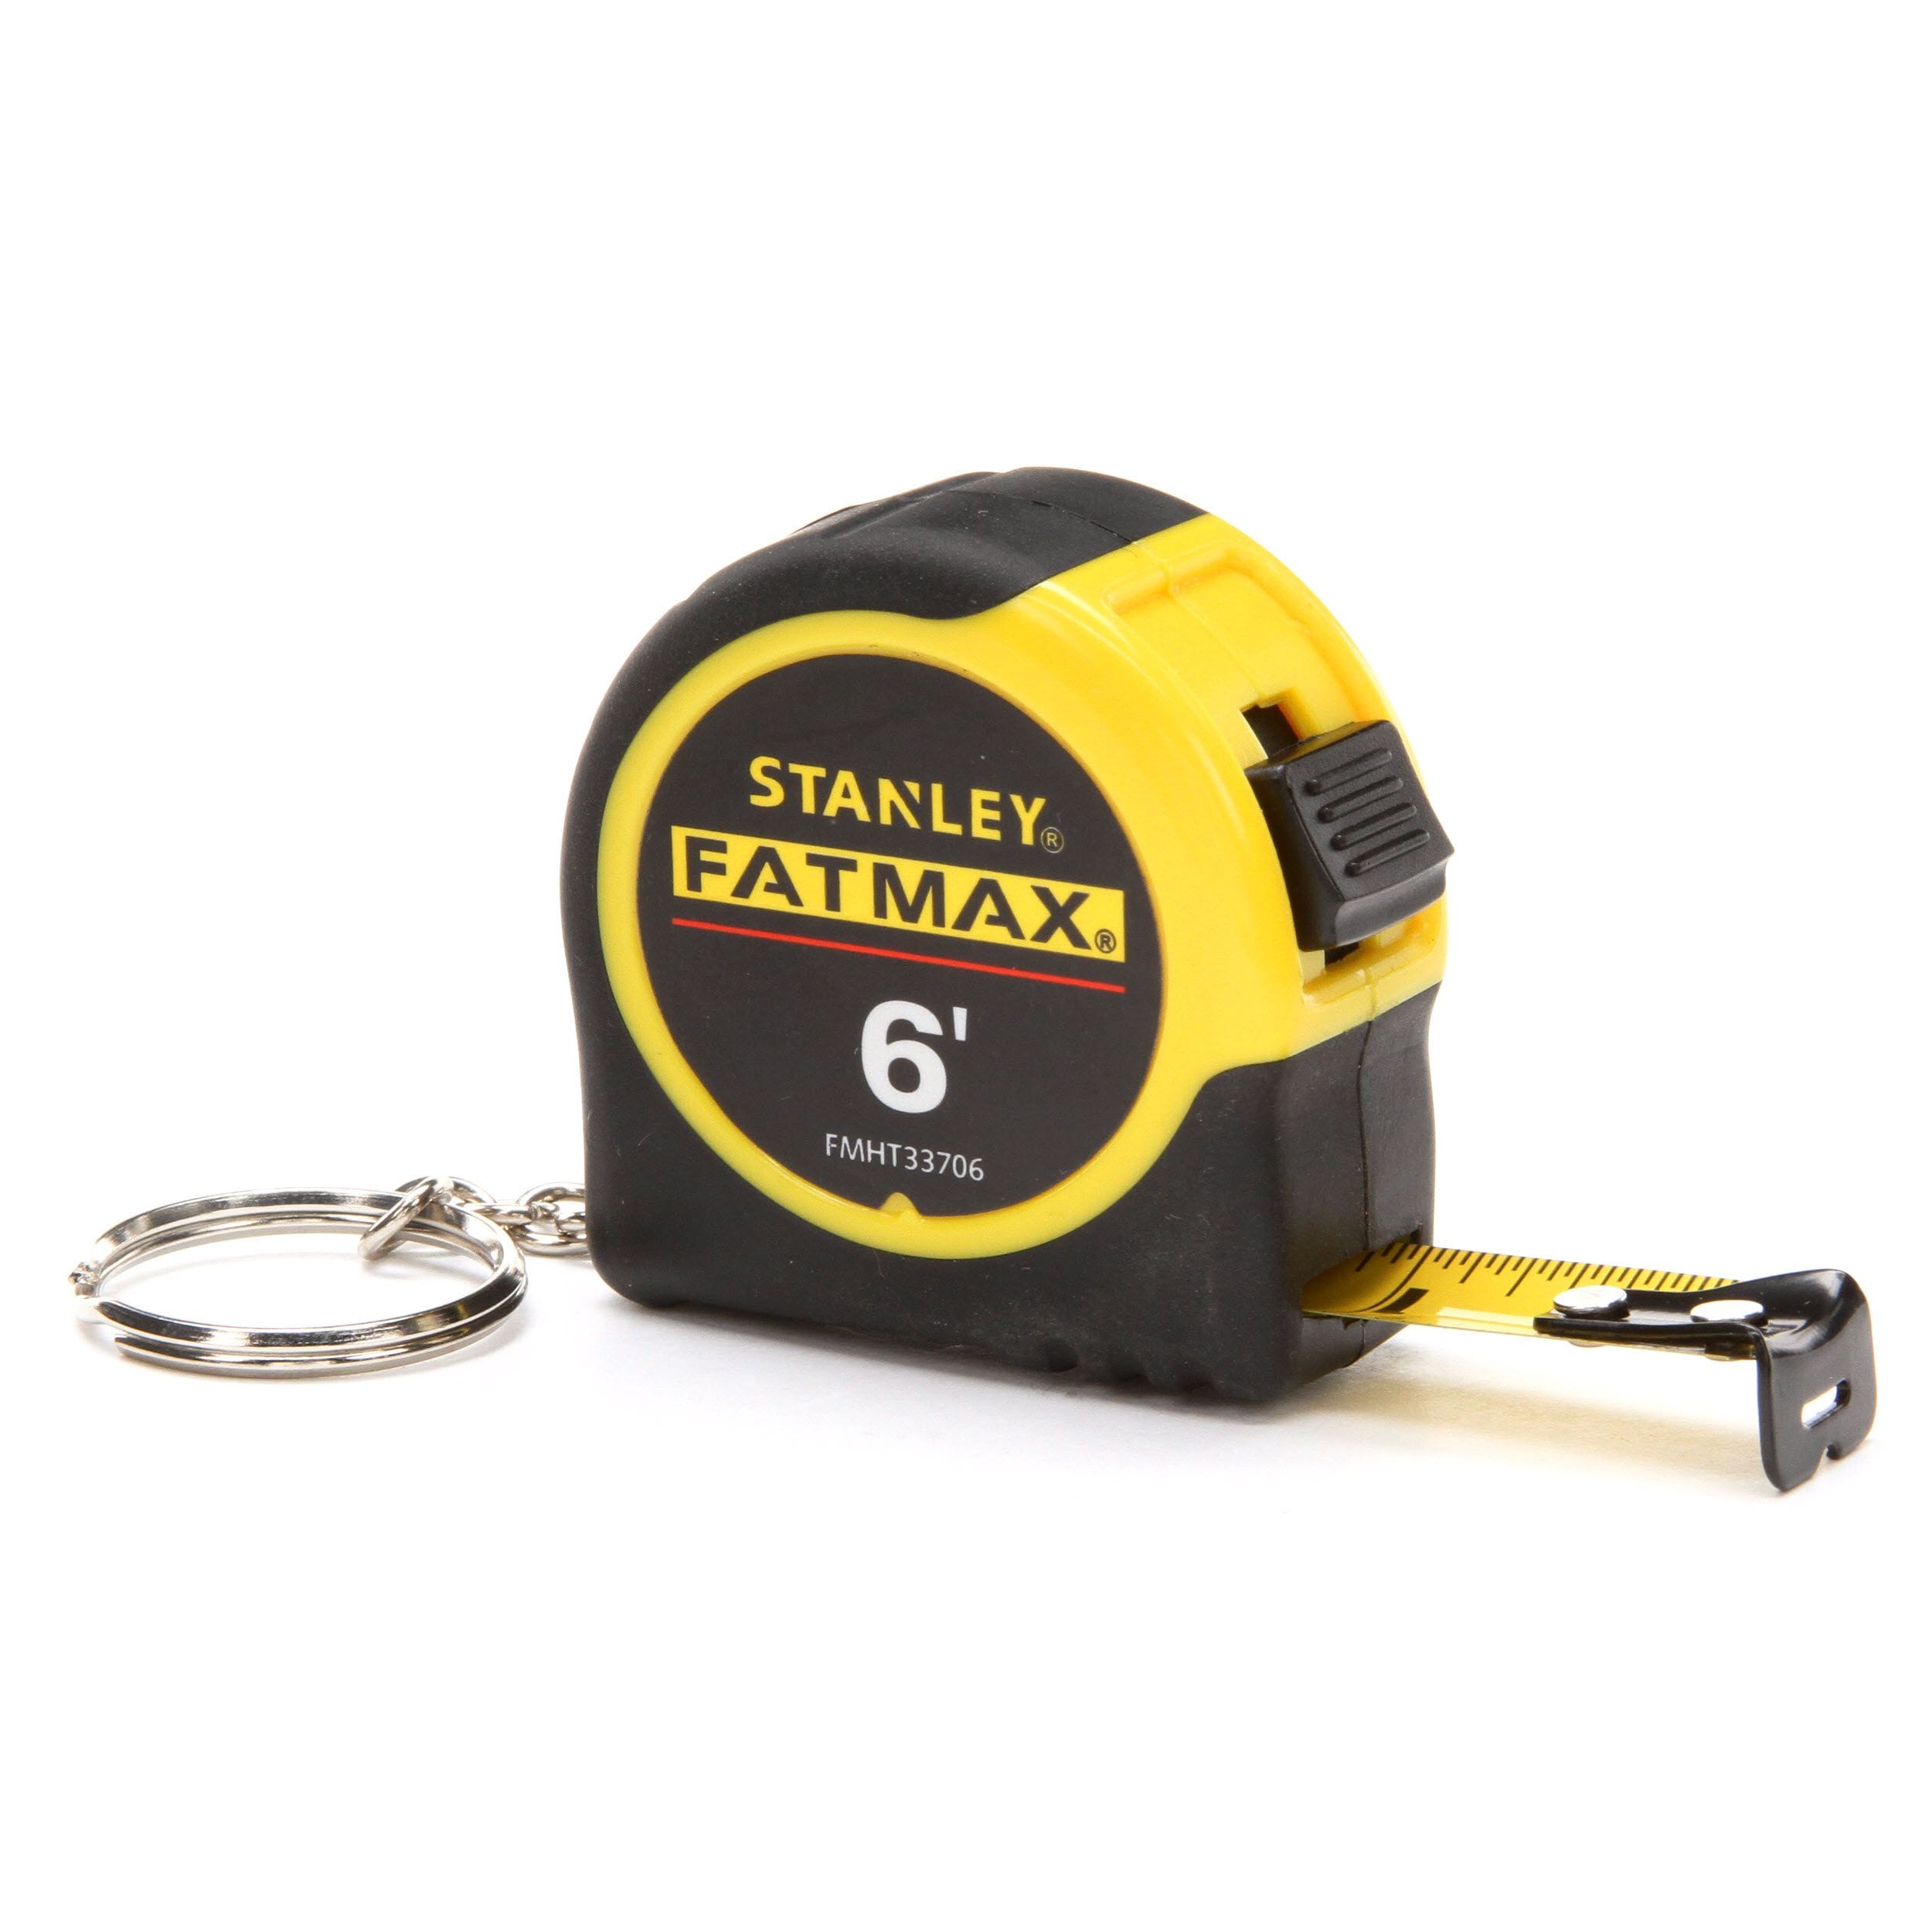 Stanley  Fatmax  6 ft W Key Chain Tape Measure  Yellow  1 pk L x 0.5 in 